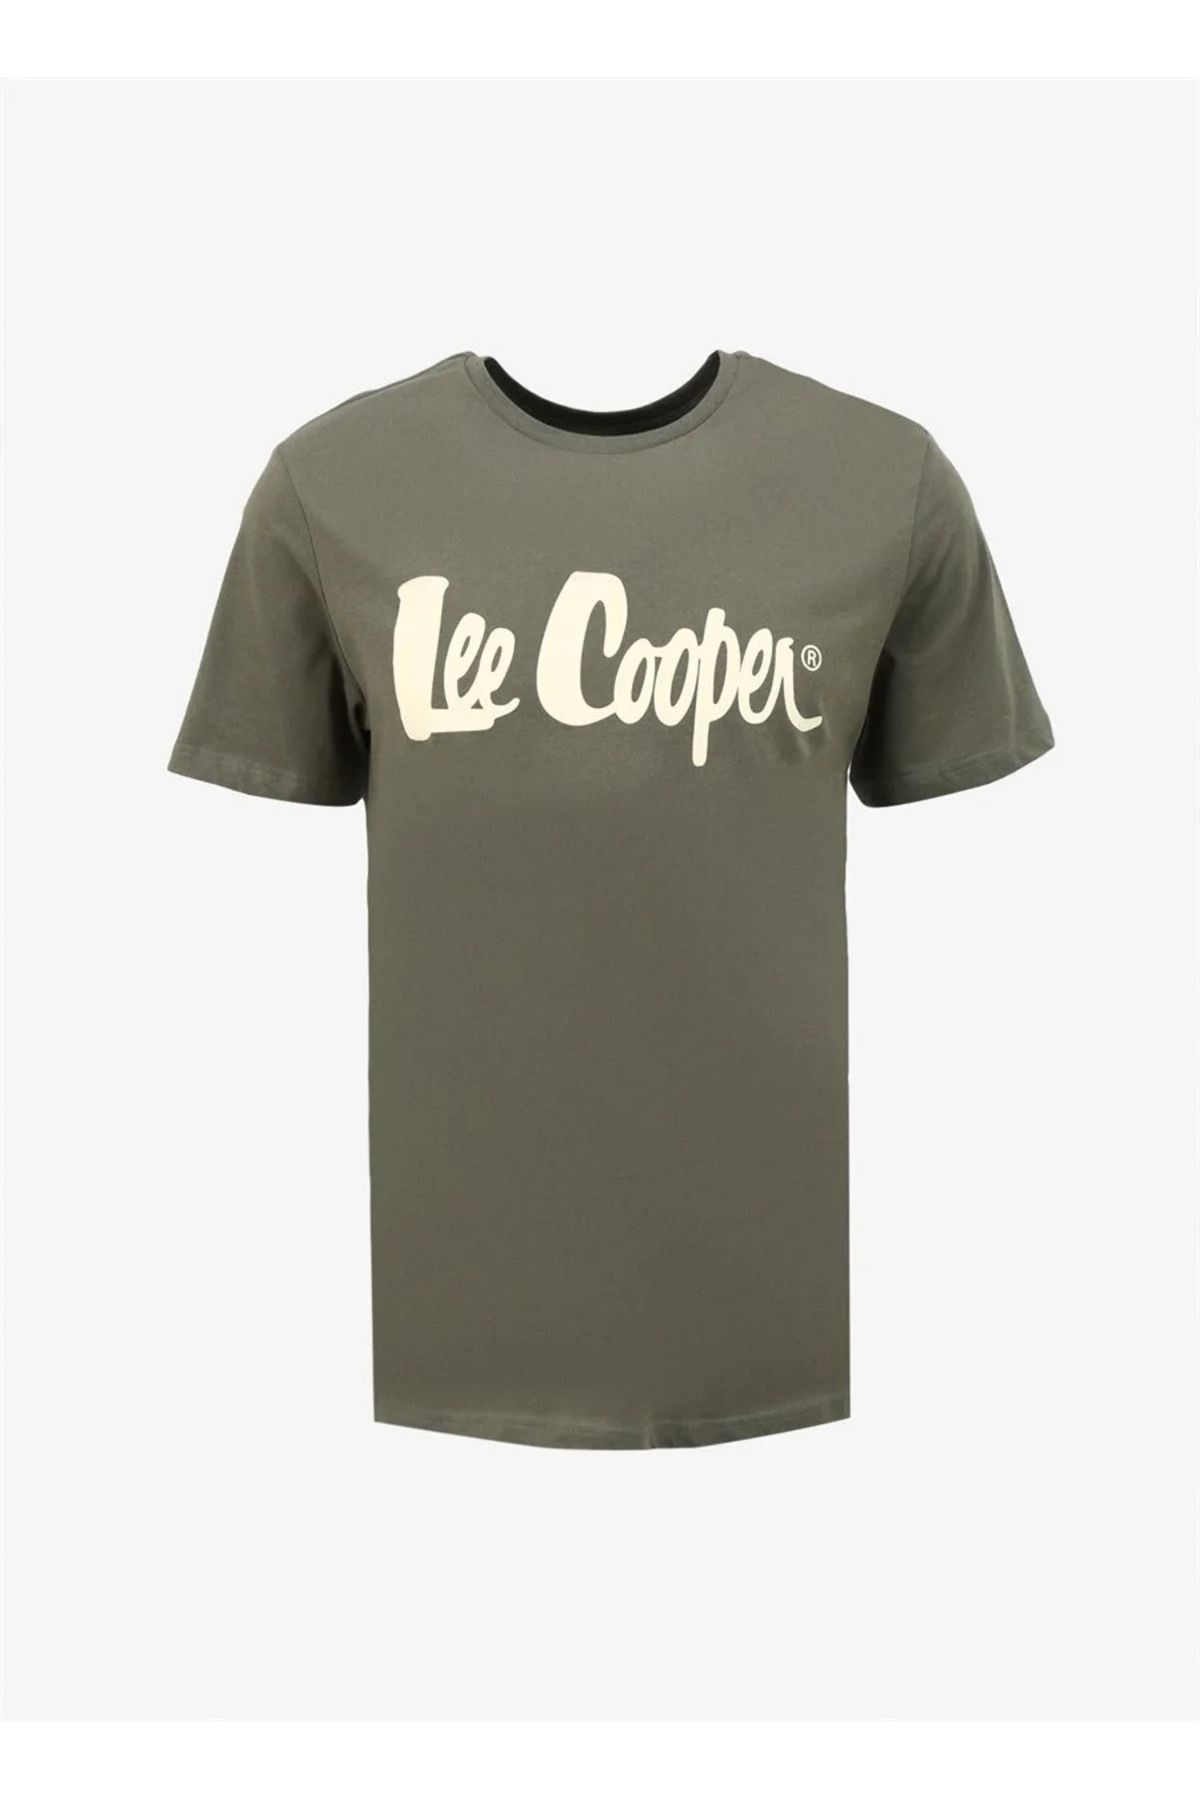 Lee Cooper LCM 242017 Lee Cooper Londonlogo Erkek O Yaka T-Shirt 242 YEŞİL